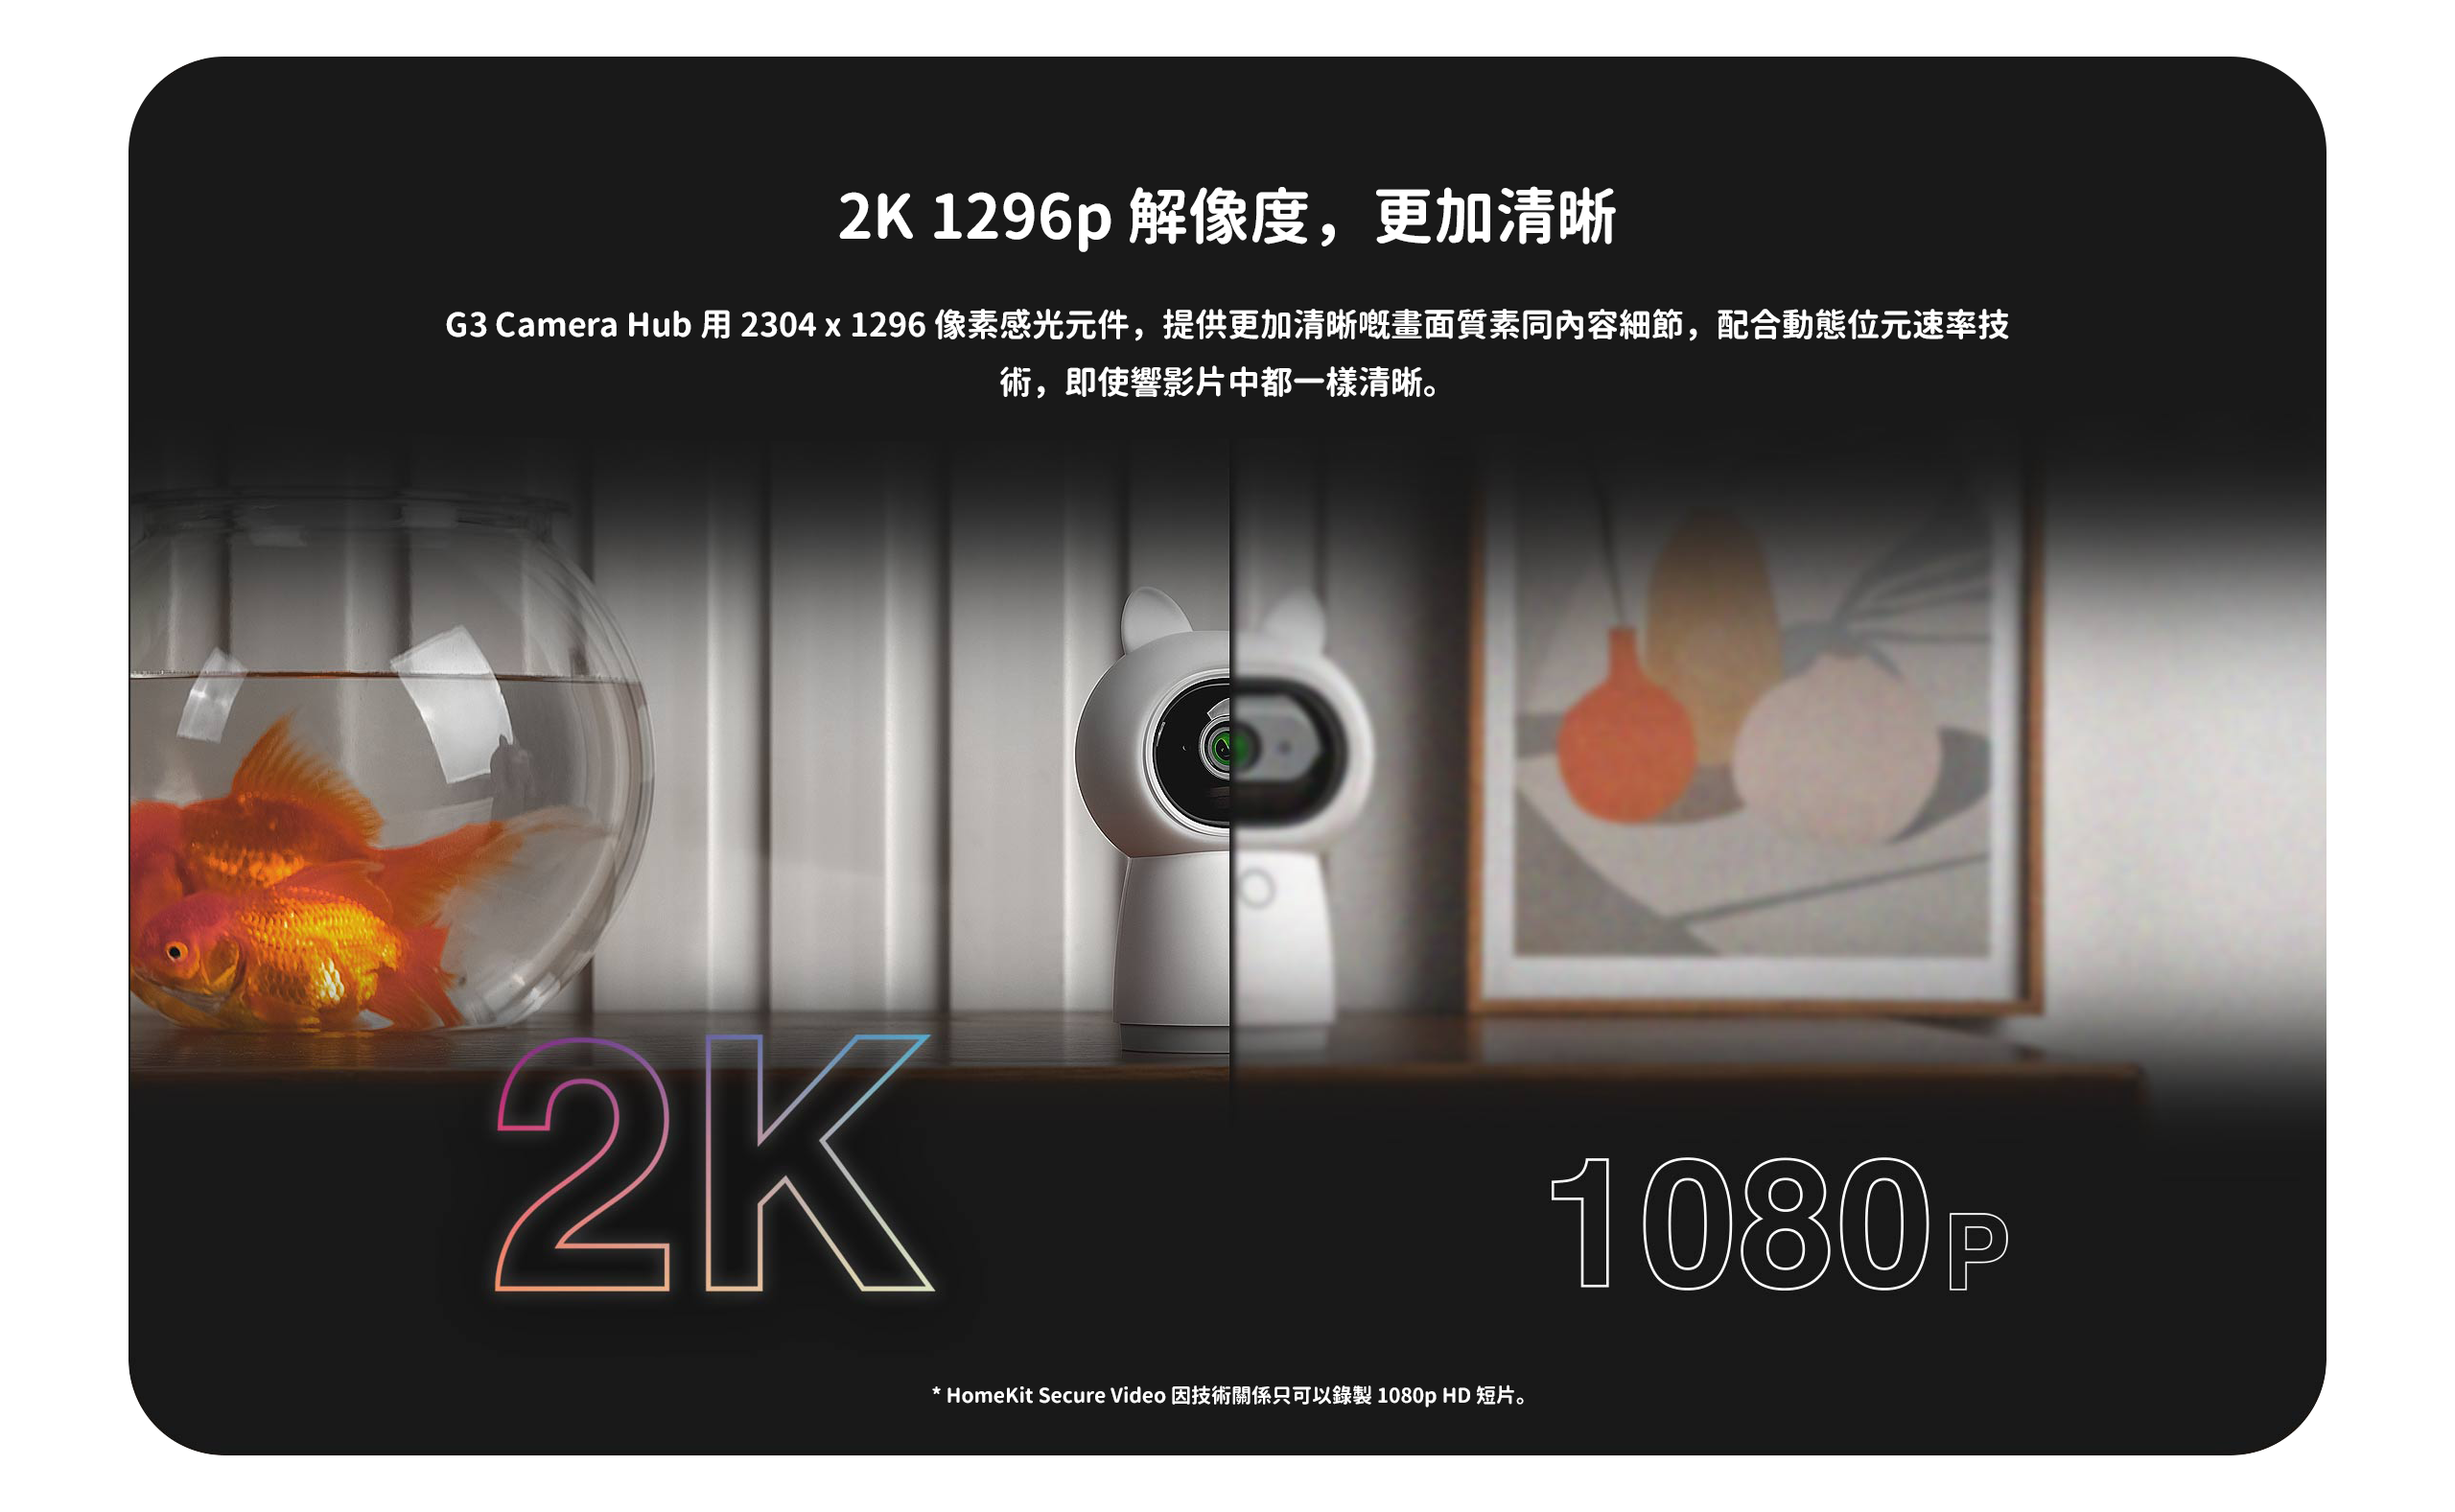 2K 1296p 解像度，更加清晰，G3 Camera Hub 用 2304 x 1296 像素感光元件，提供更加清晰嘅畫面質素同內容細節，配合動態位元速率技術，即使響影片中都一樣清晰。